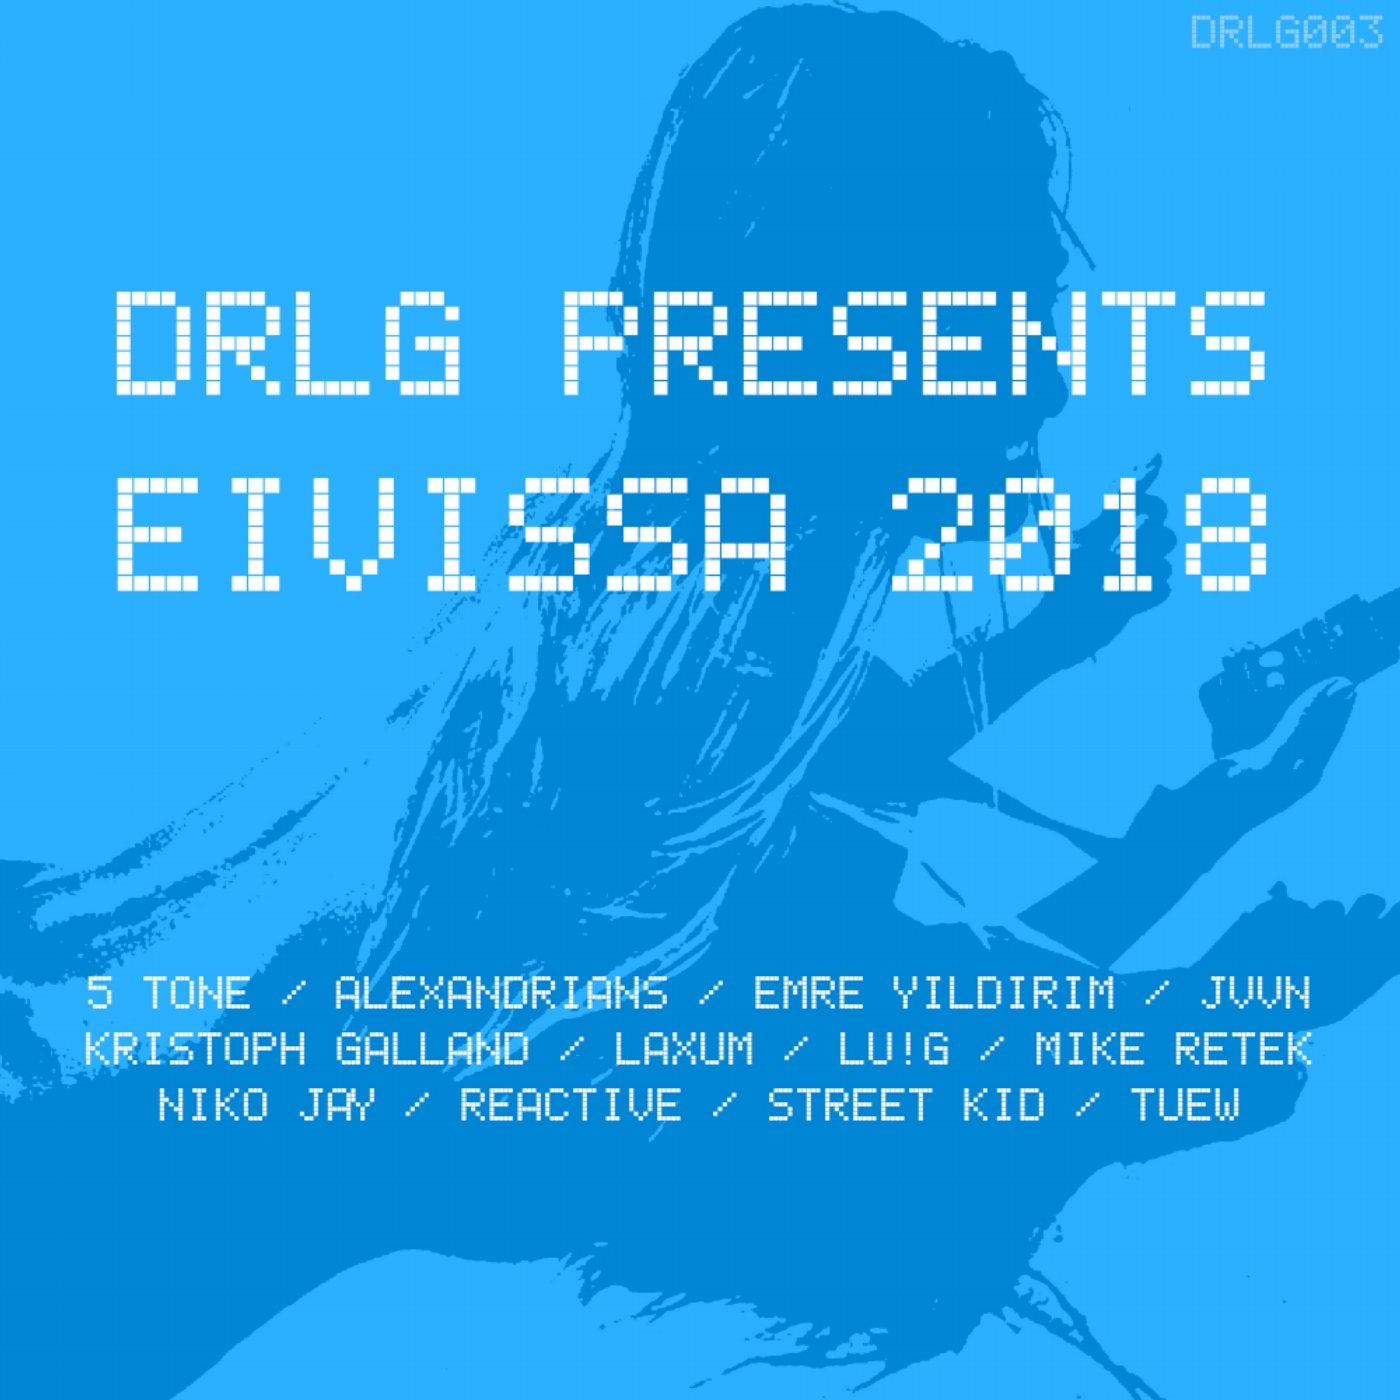 DRLG Presents EIVISSA 2018